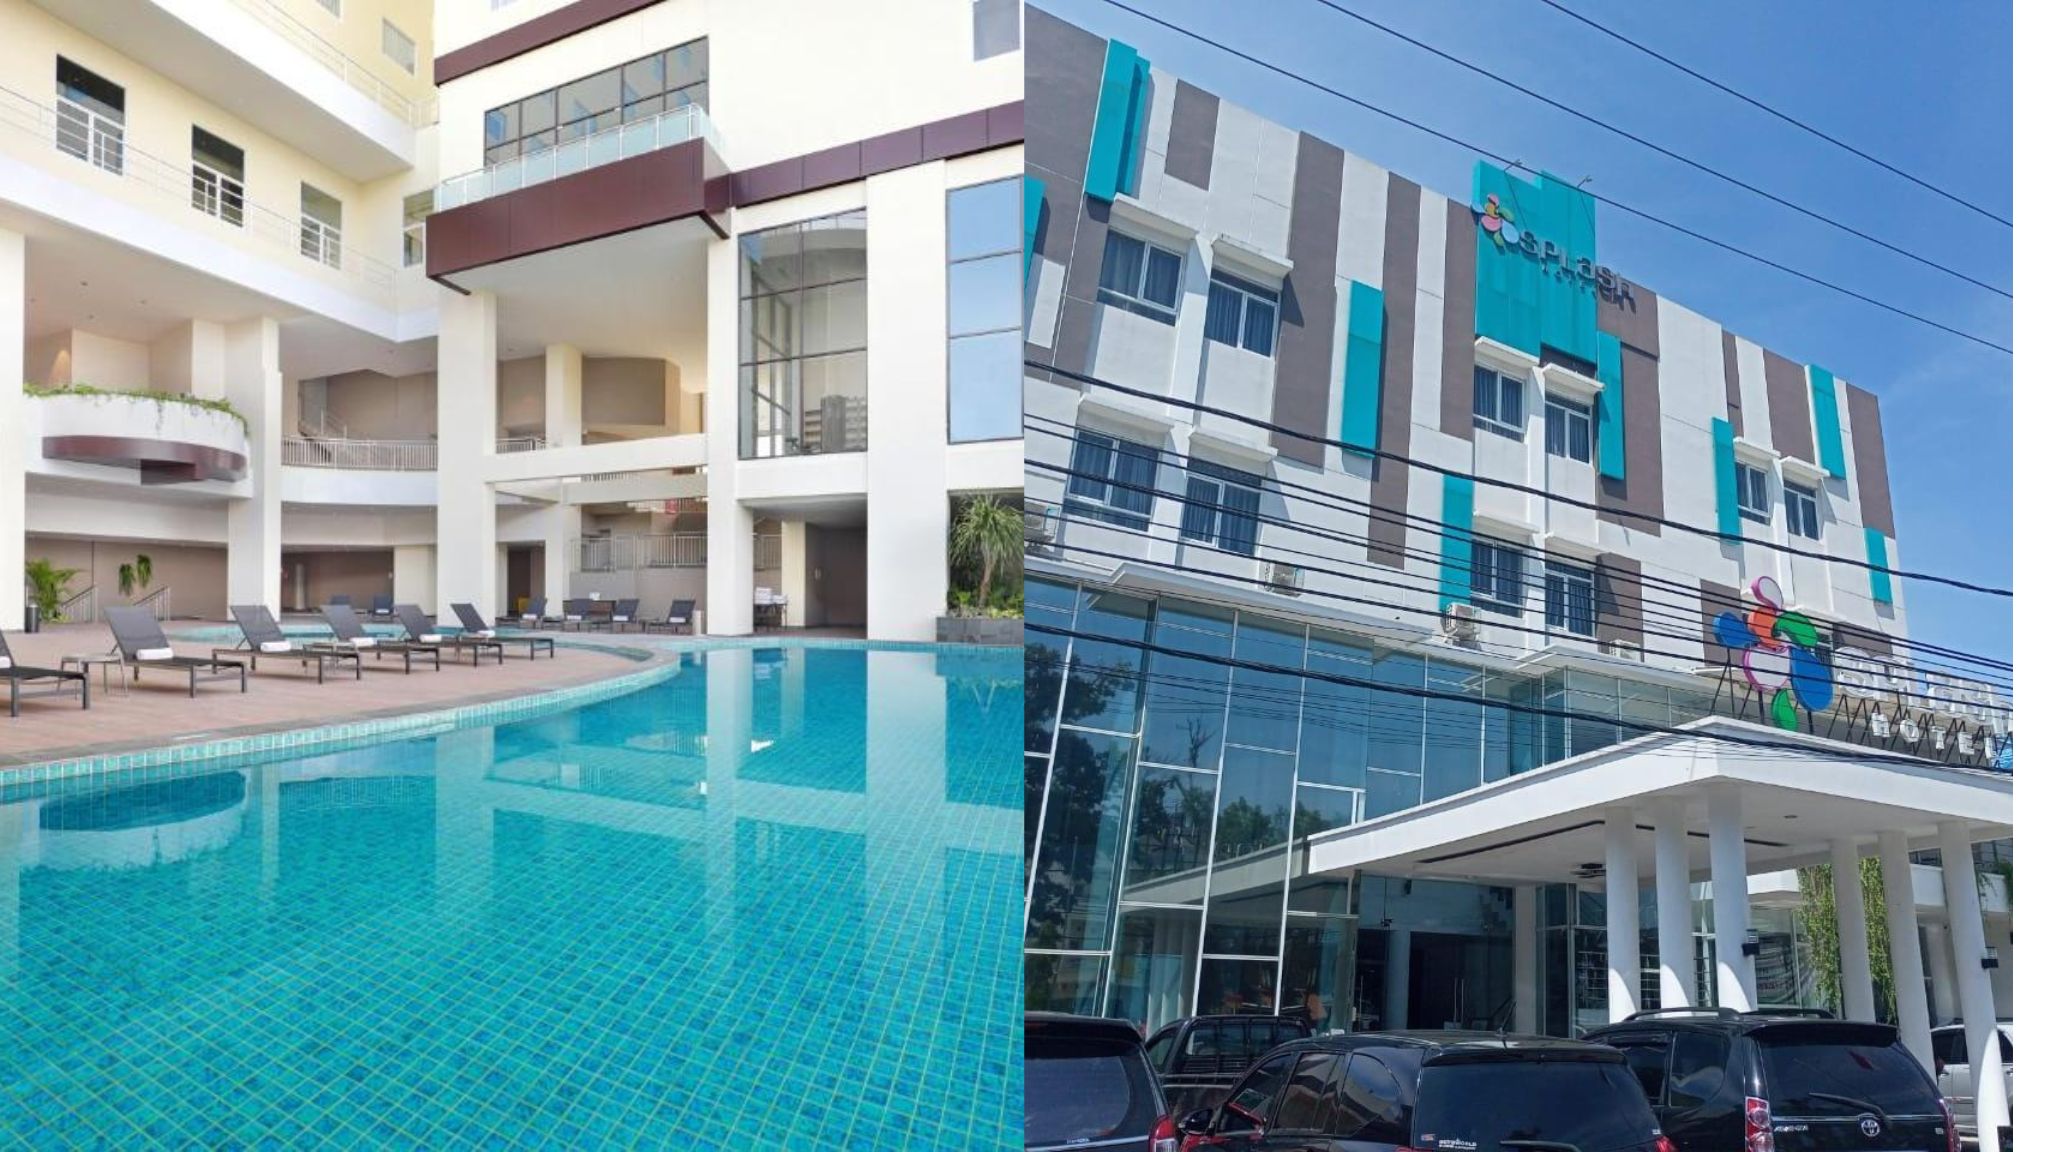 Ternyata Ini Hotel Termurah di Bengkulu, Fasilitasnya Juga Oke Lho, Ada Mercure  sampai Splash Hotel